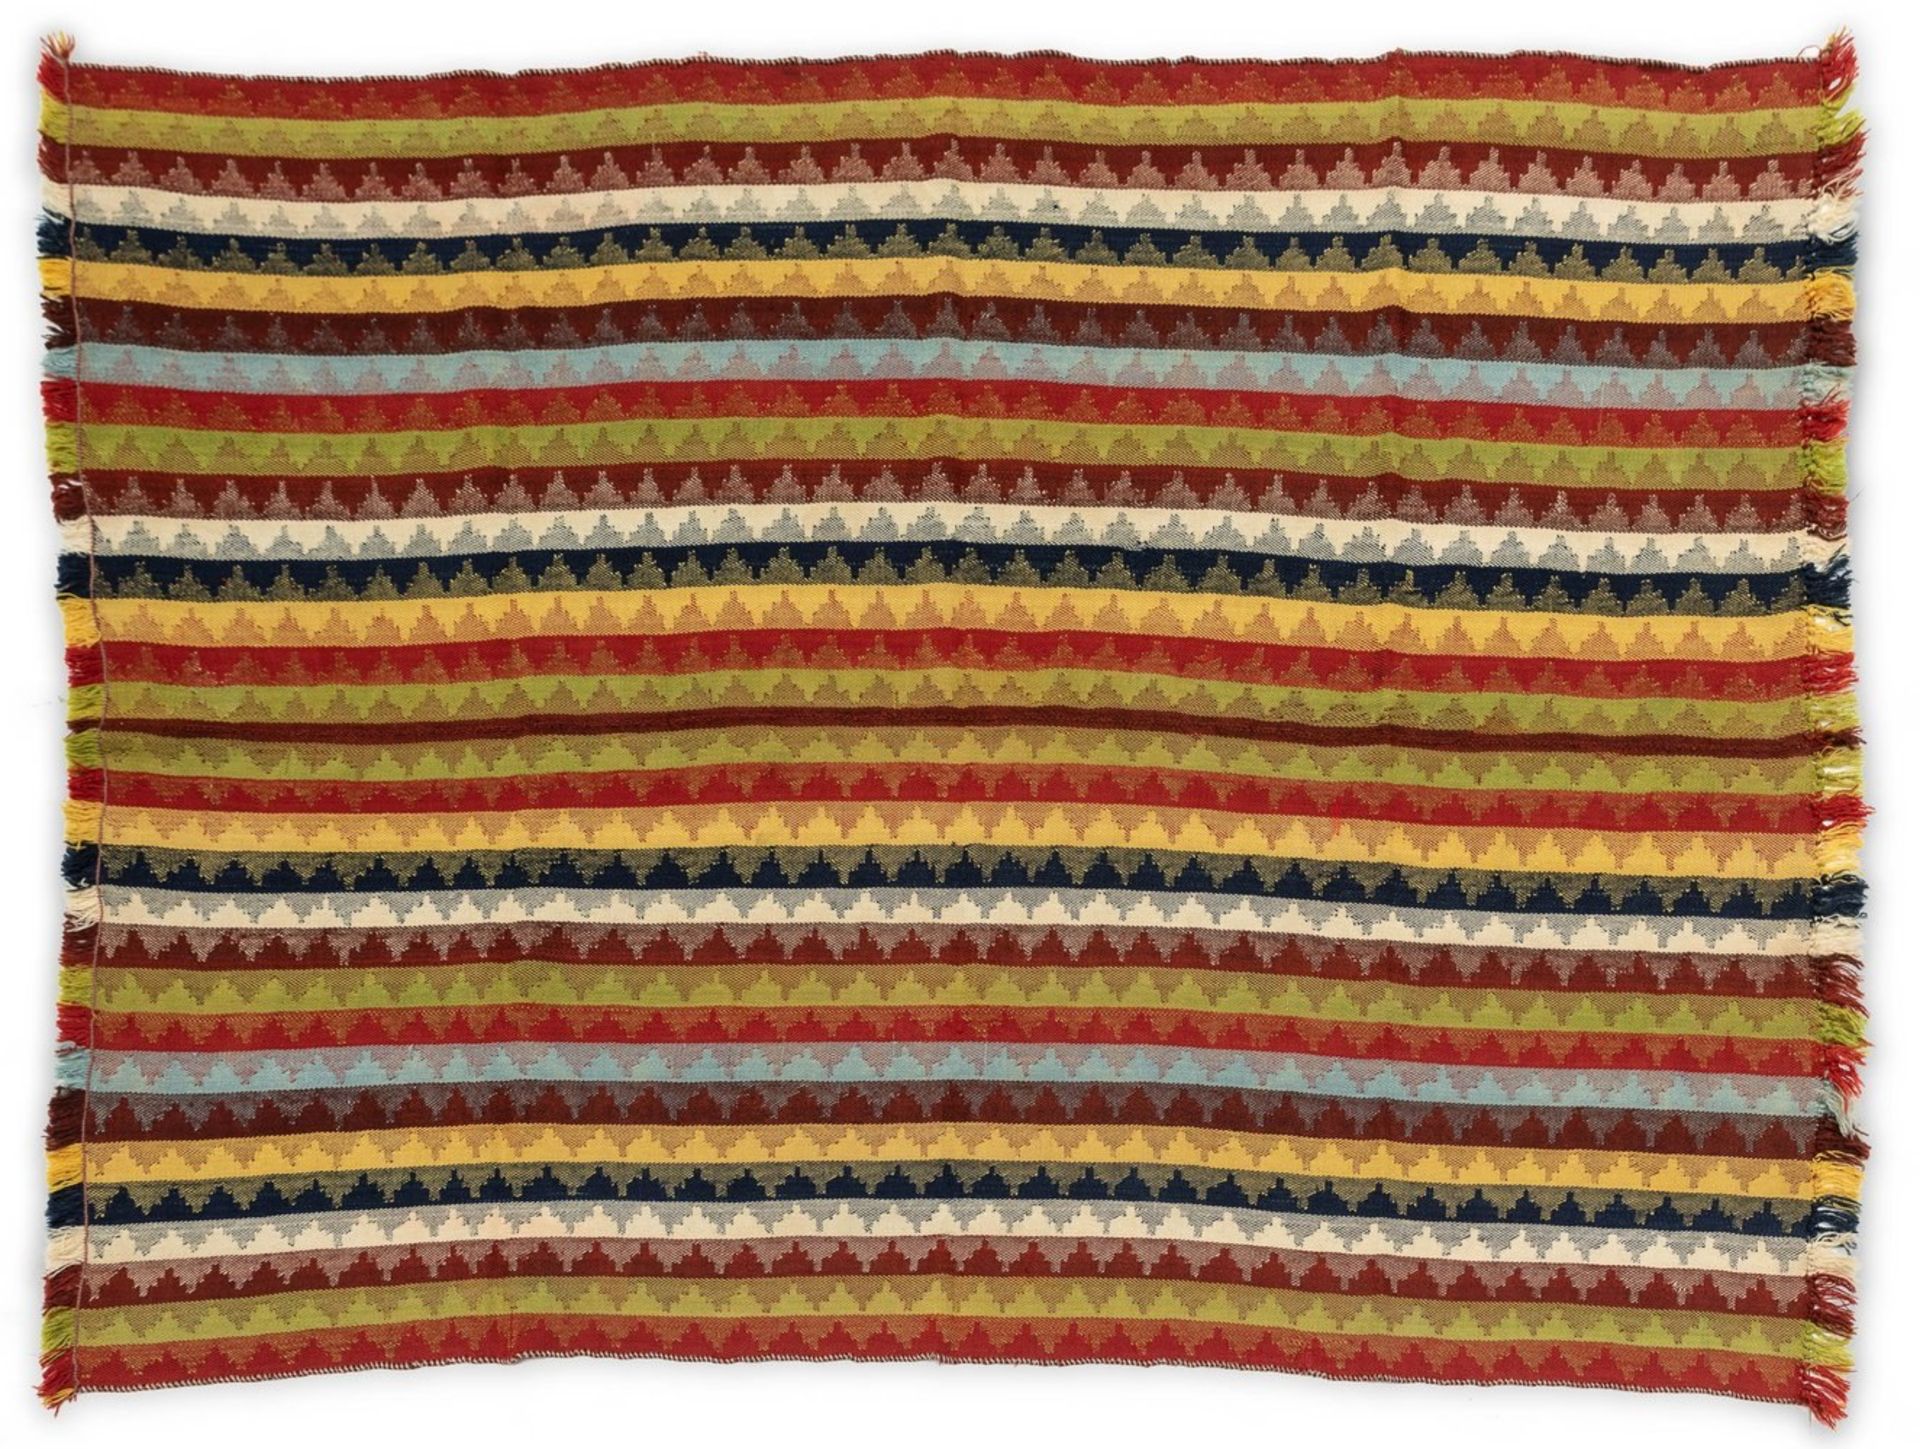 Jajim, Gaschgai MoiGr. ca. 210/158 cm. Wolle mit bunten Streifen aus zwei zusammengenäht